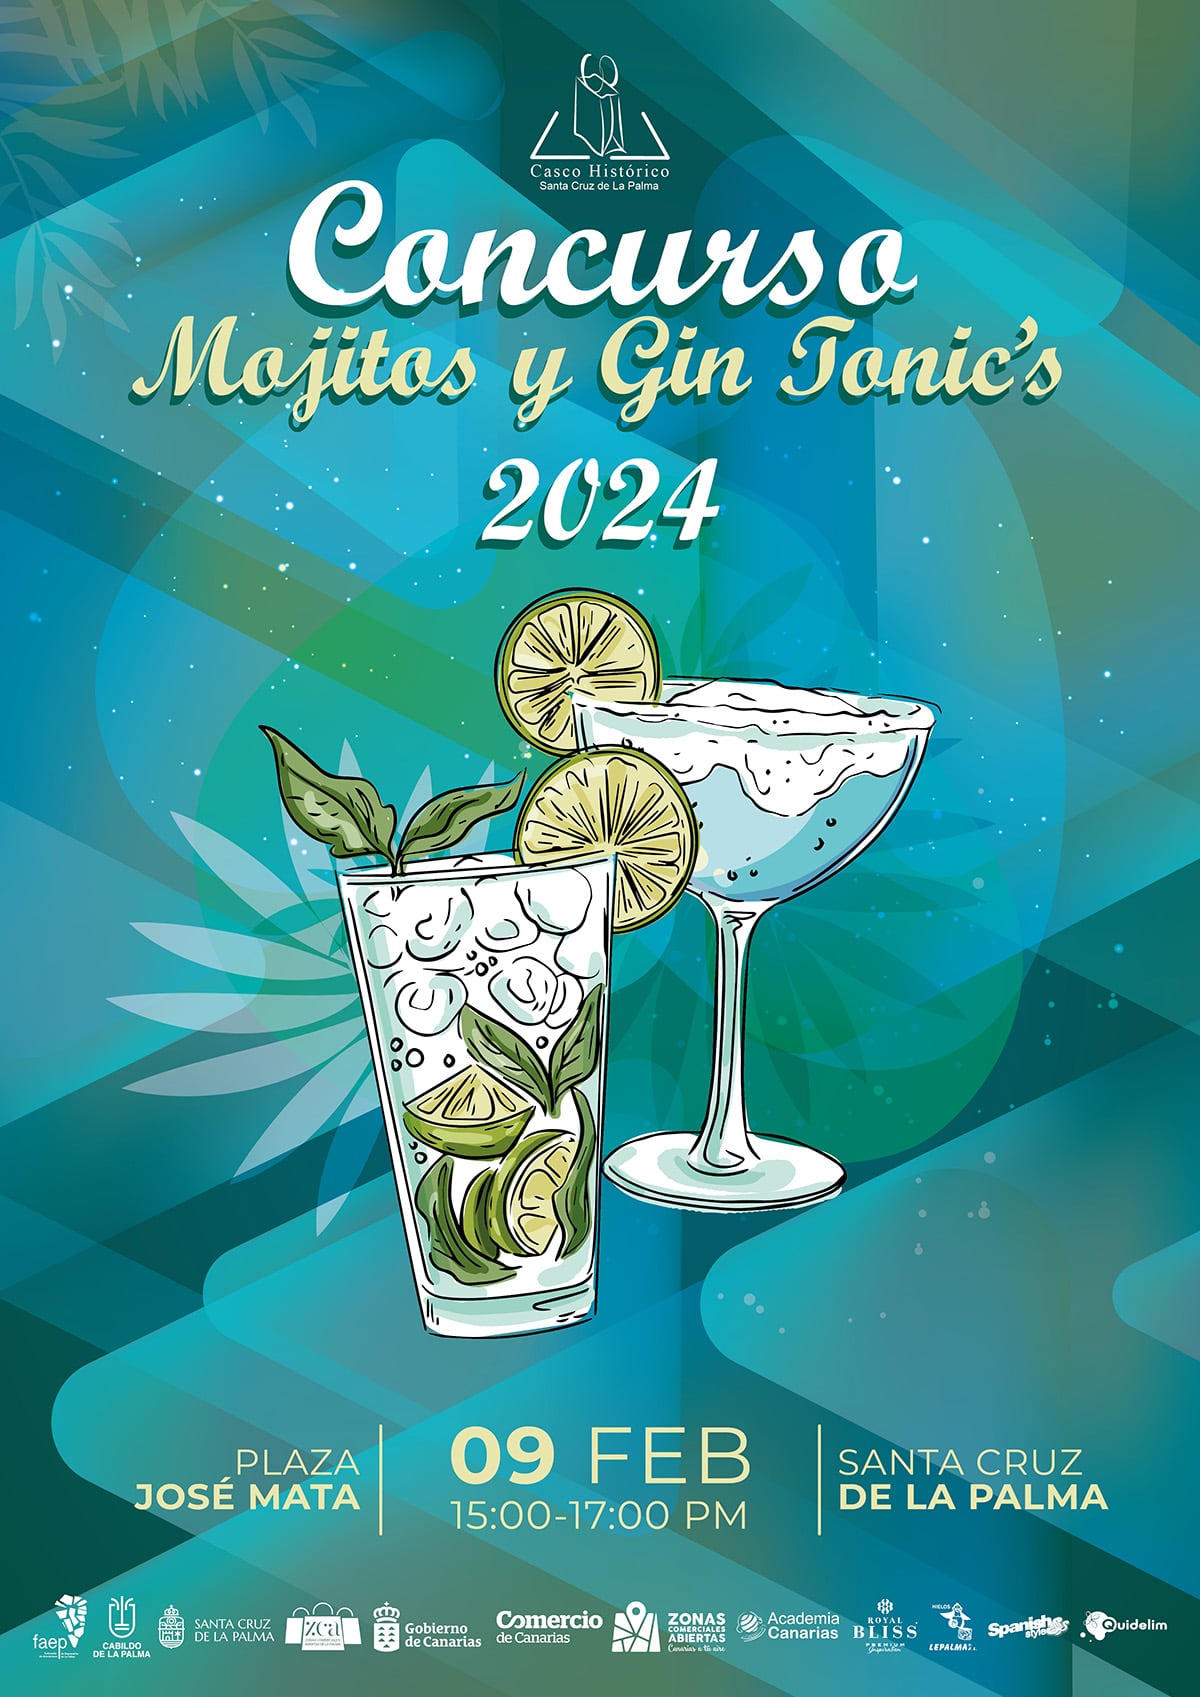 Concurso Mojitos y Gin Tonic's 2024